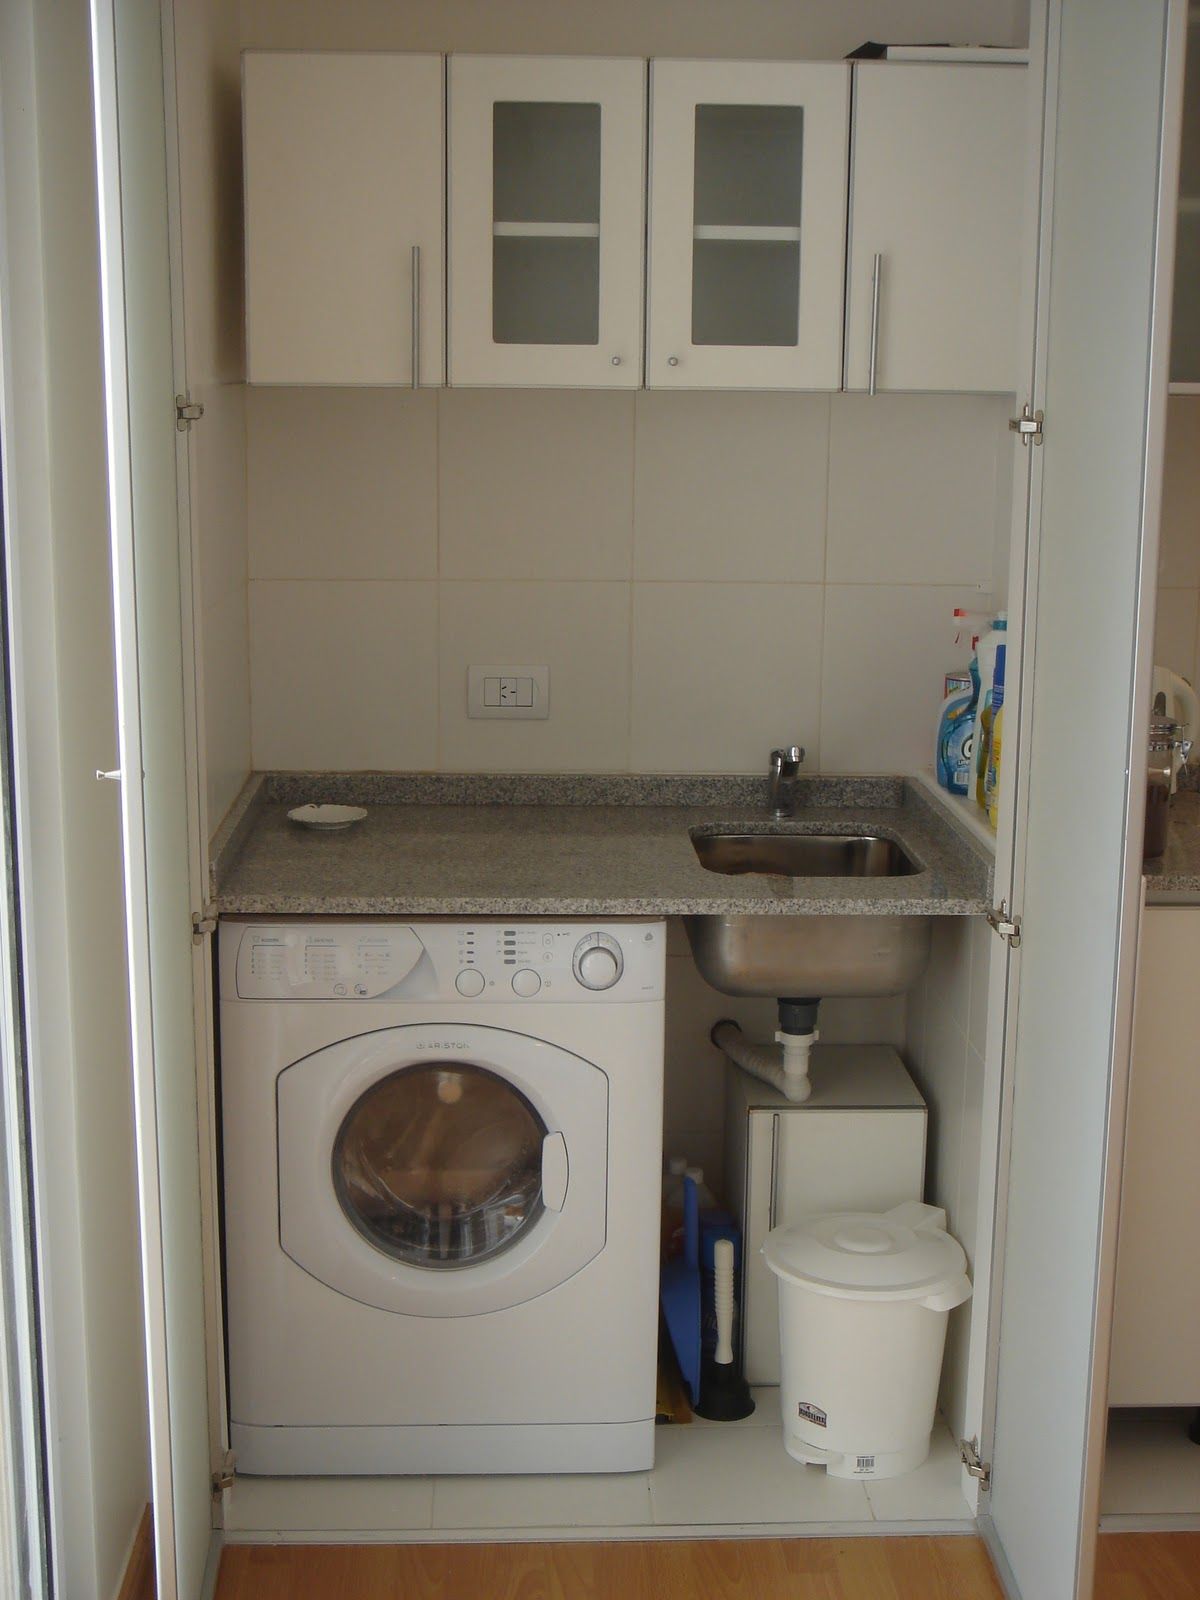 lavadero integrado a la cocina - Buscar con Google ...